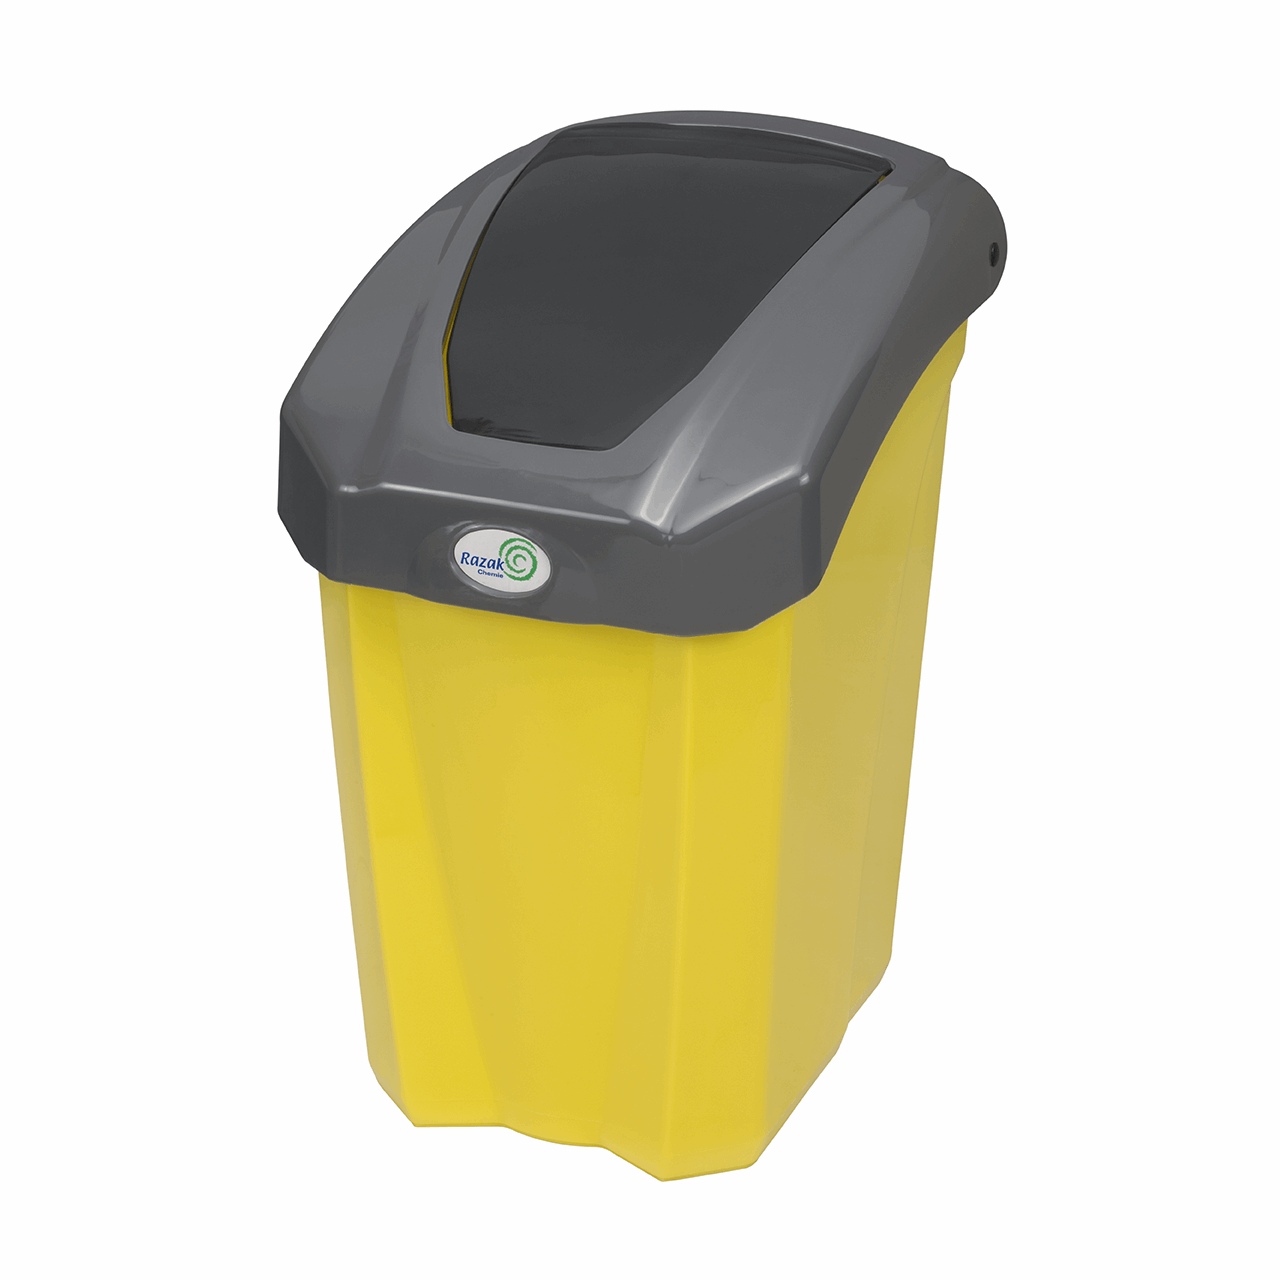 سطل زباله رازک شیمی مدل 1005 گنجایش 45 لیتر